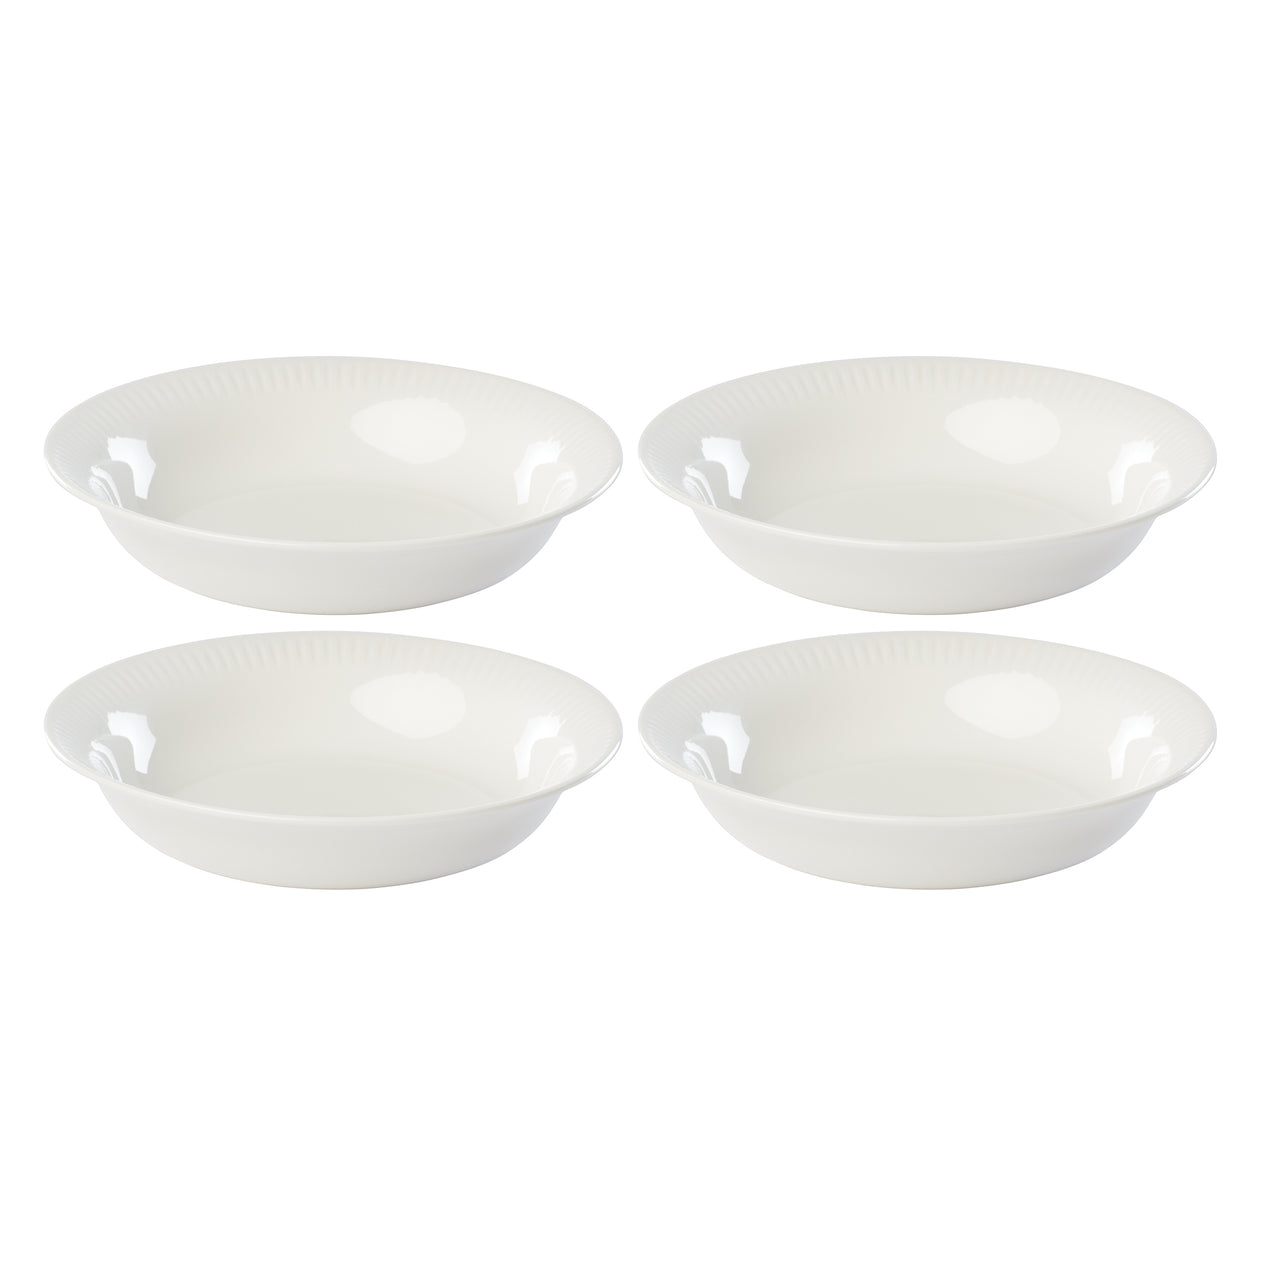 Over & Back 4-piece Porcelain Serving Bowl Set